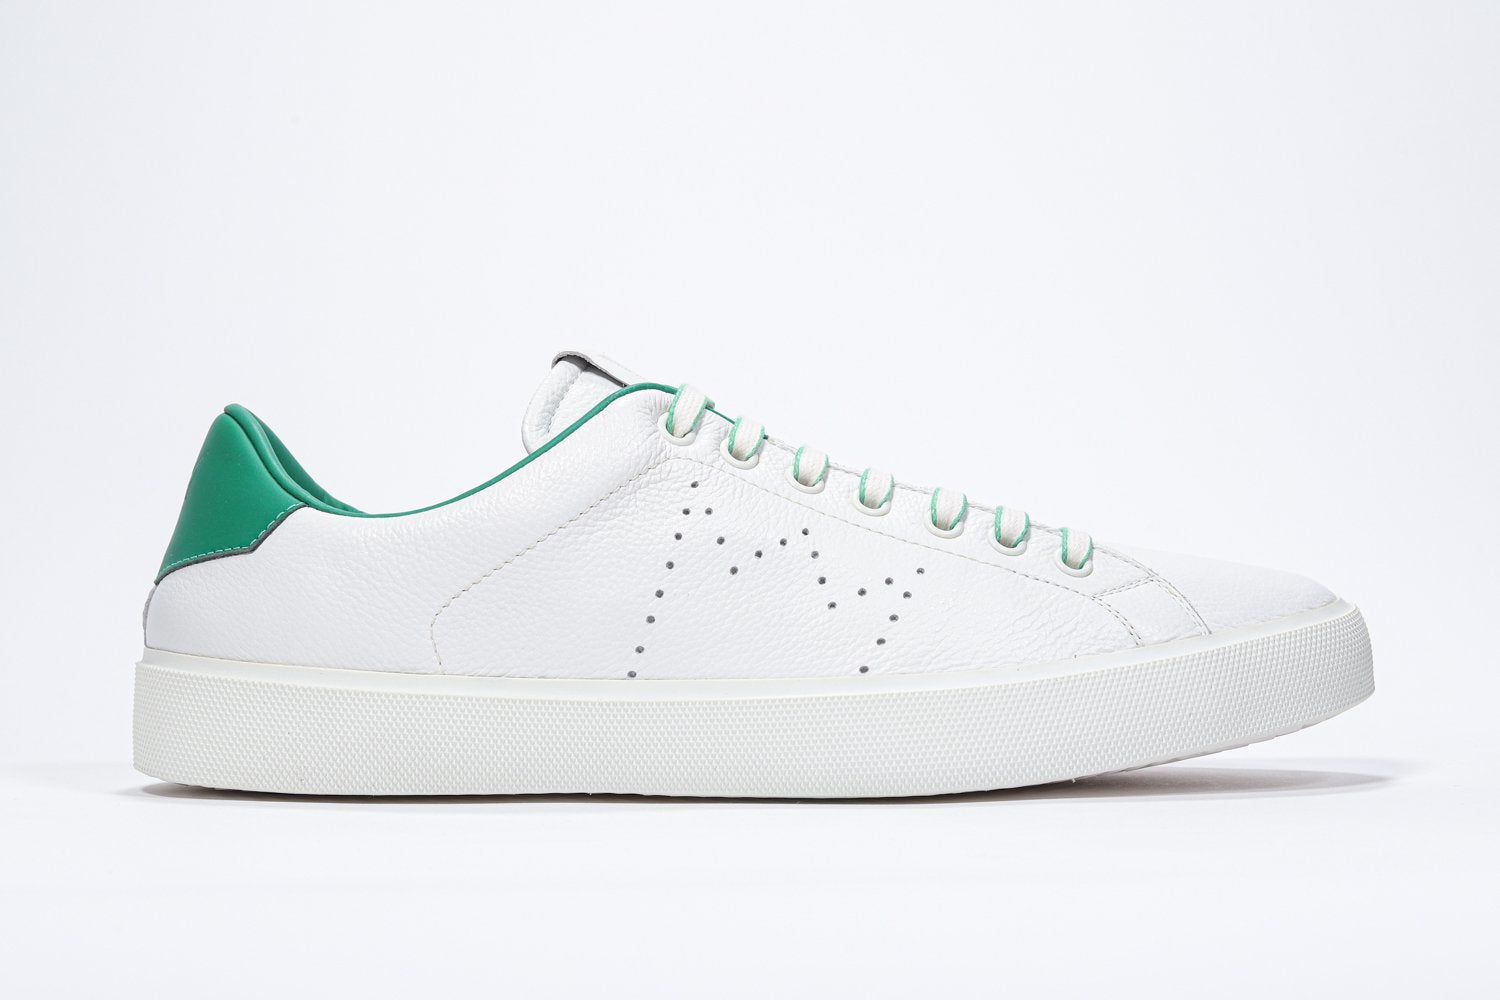 Profil latéral de la chaussure blanche sneaker avec des détails verts et le logo perforé de la couronne sur l'empeigne. Tige en cuir et semelle en caoutchouc blanc.